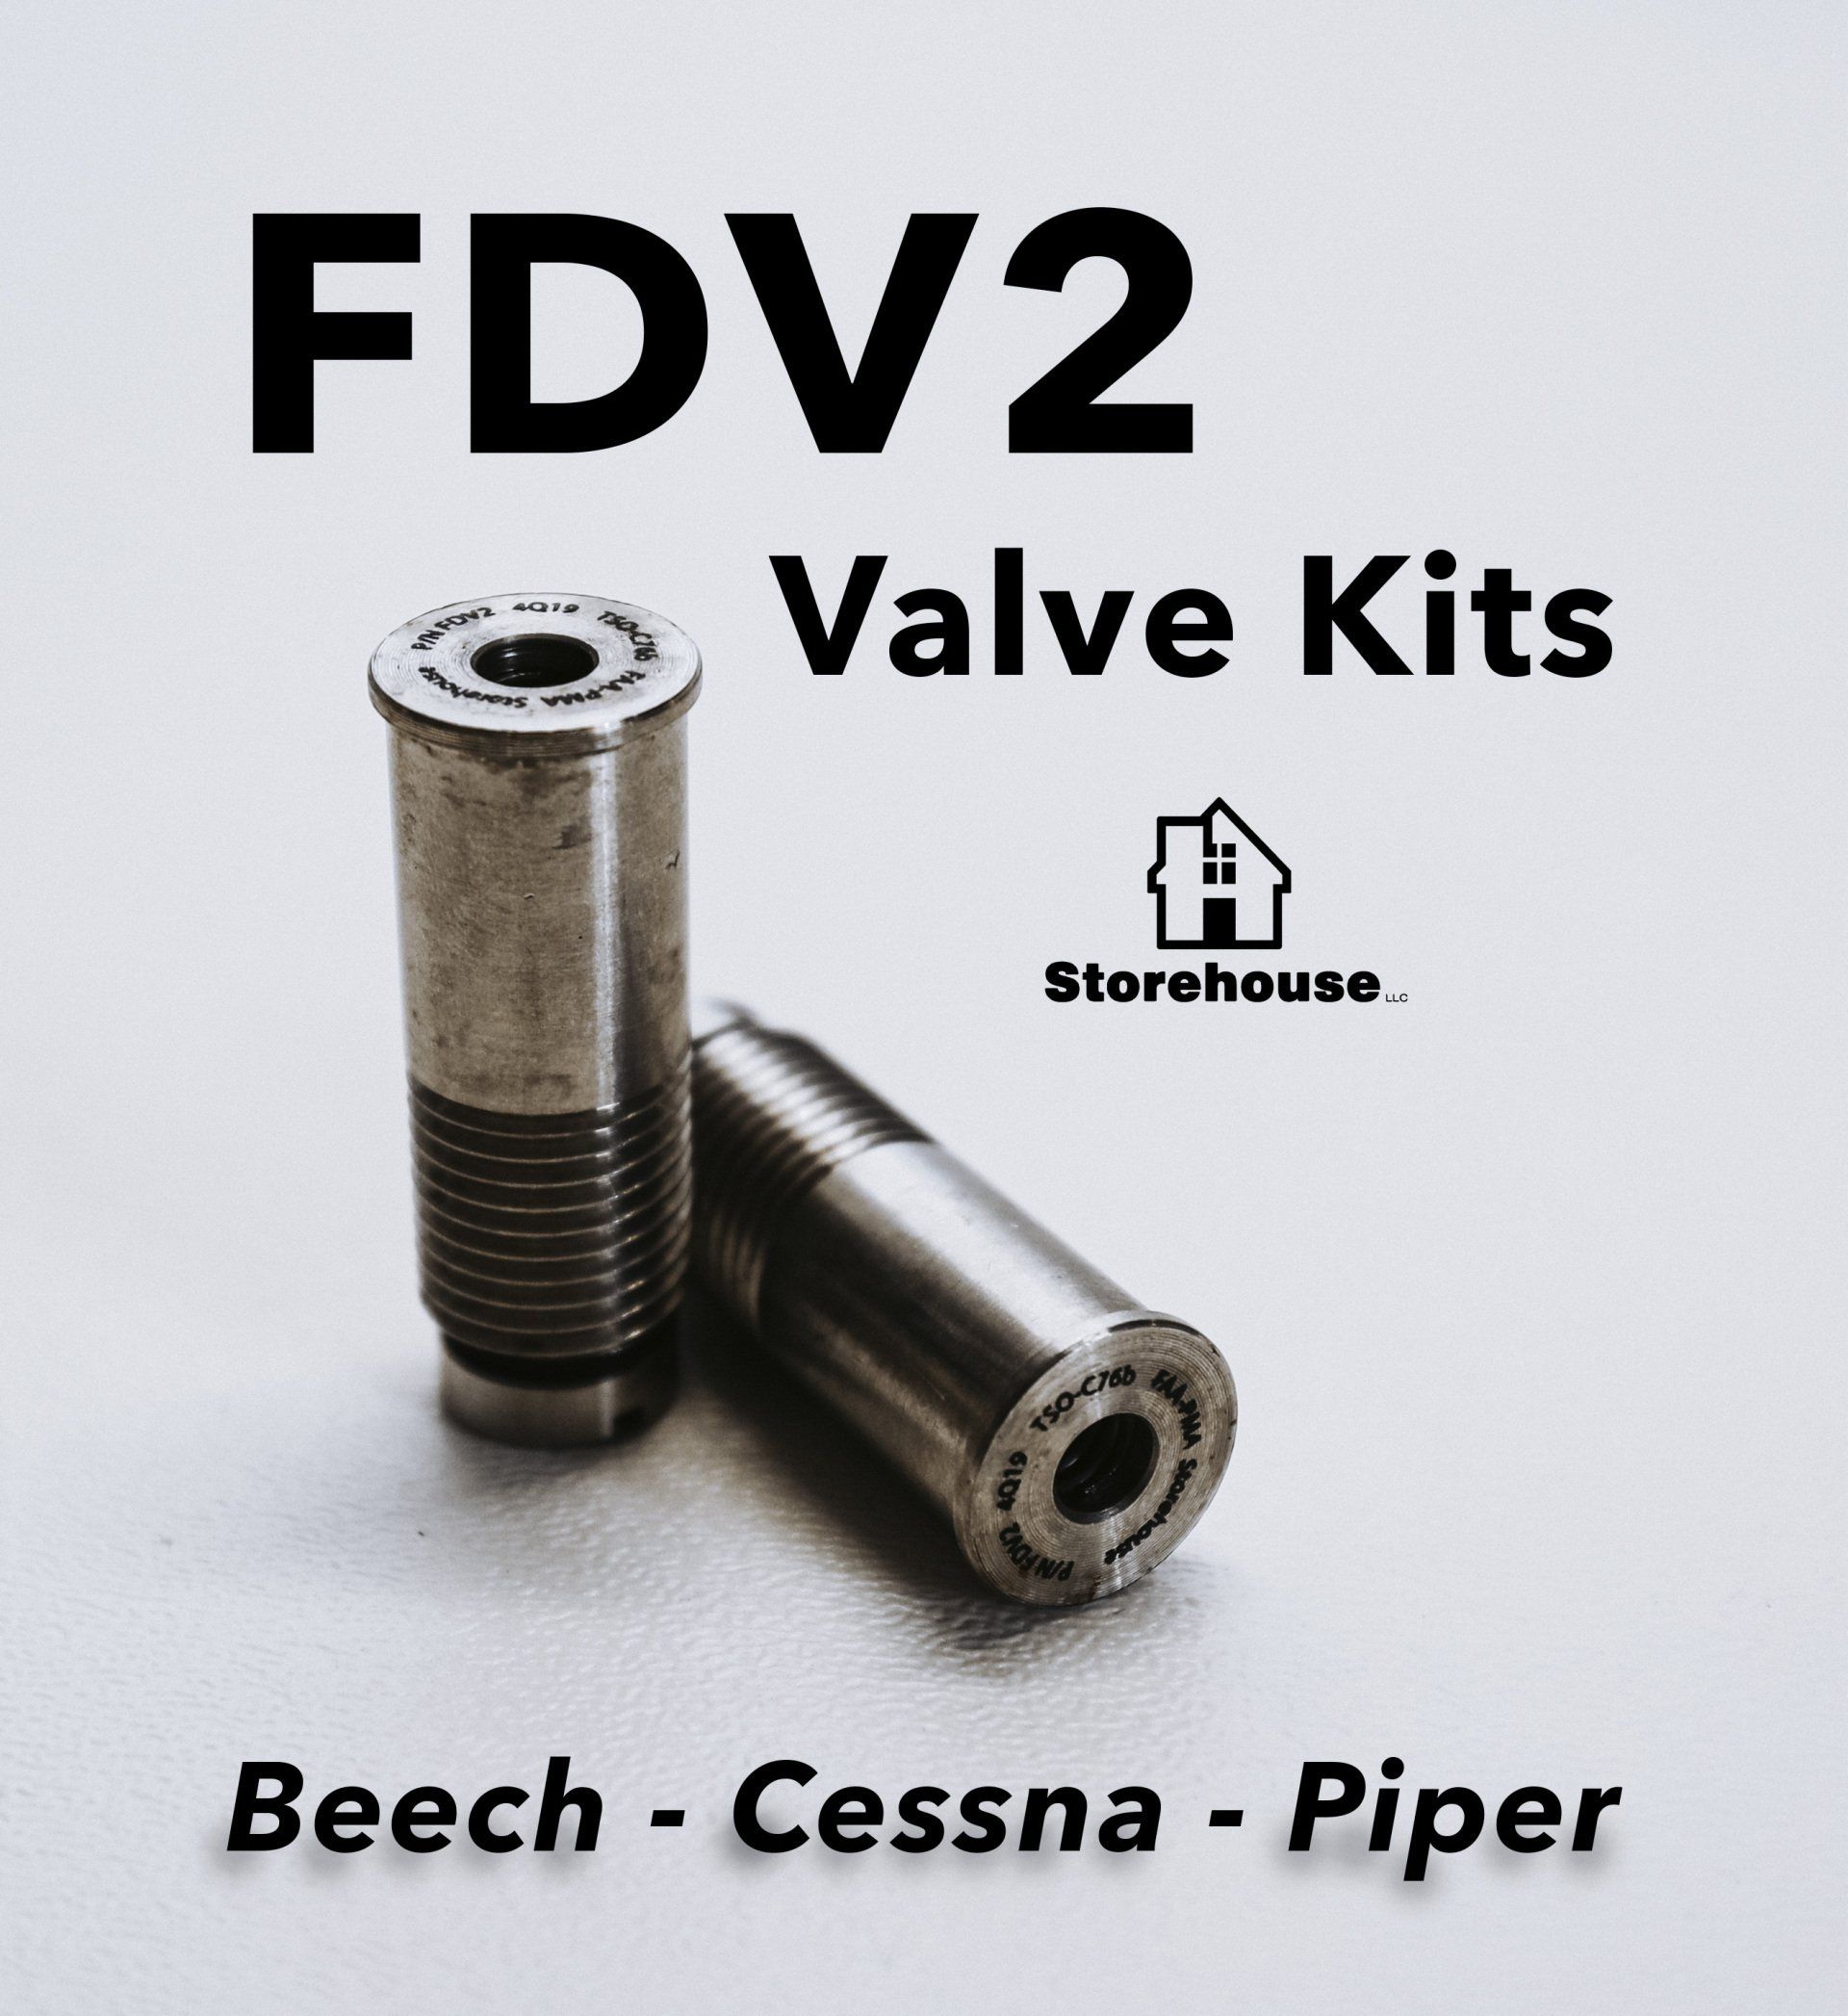 FDV2 Valve Kits